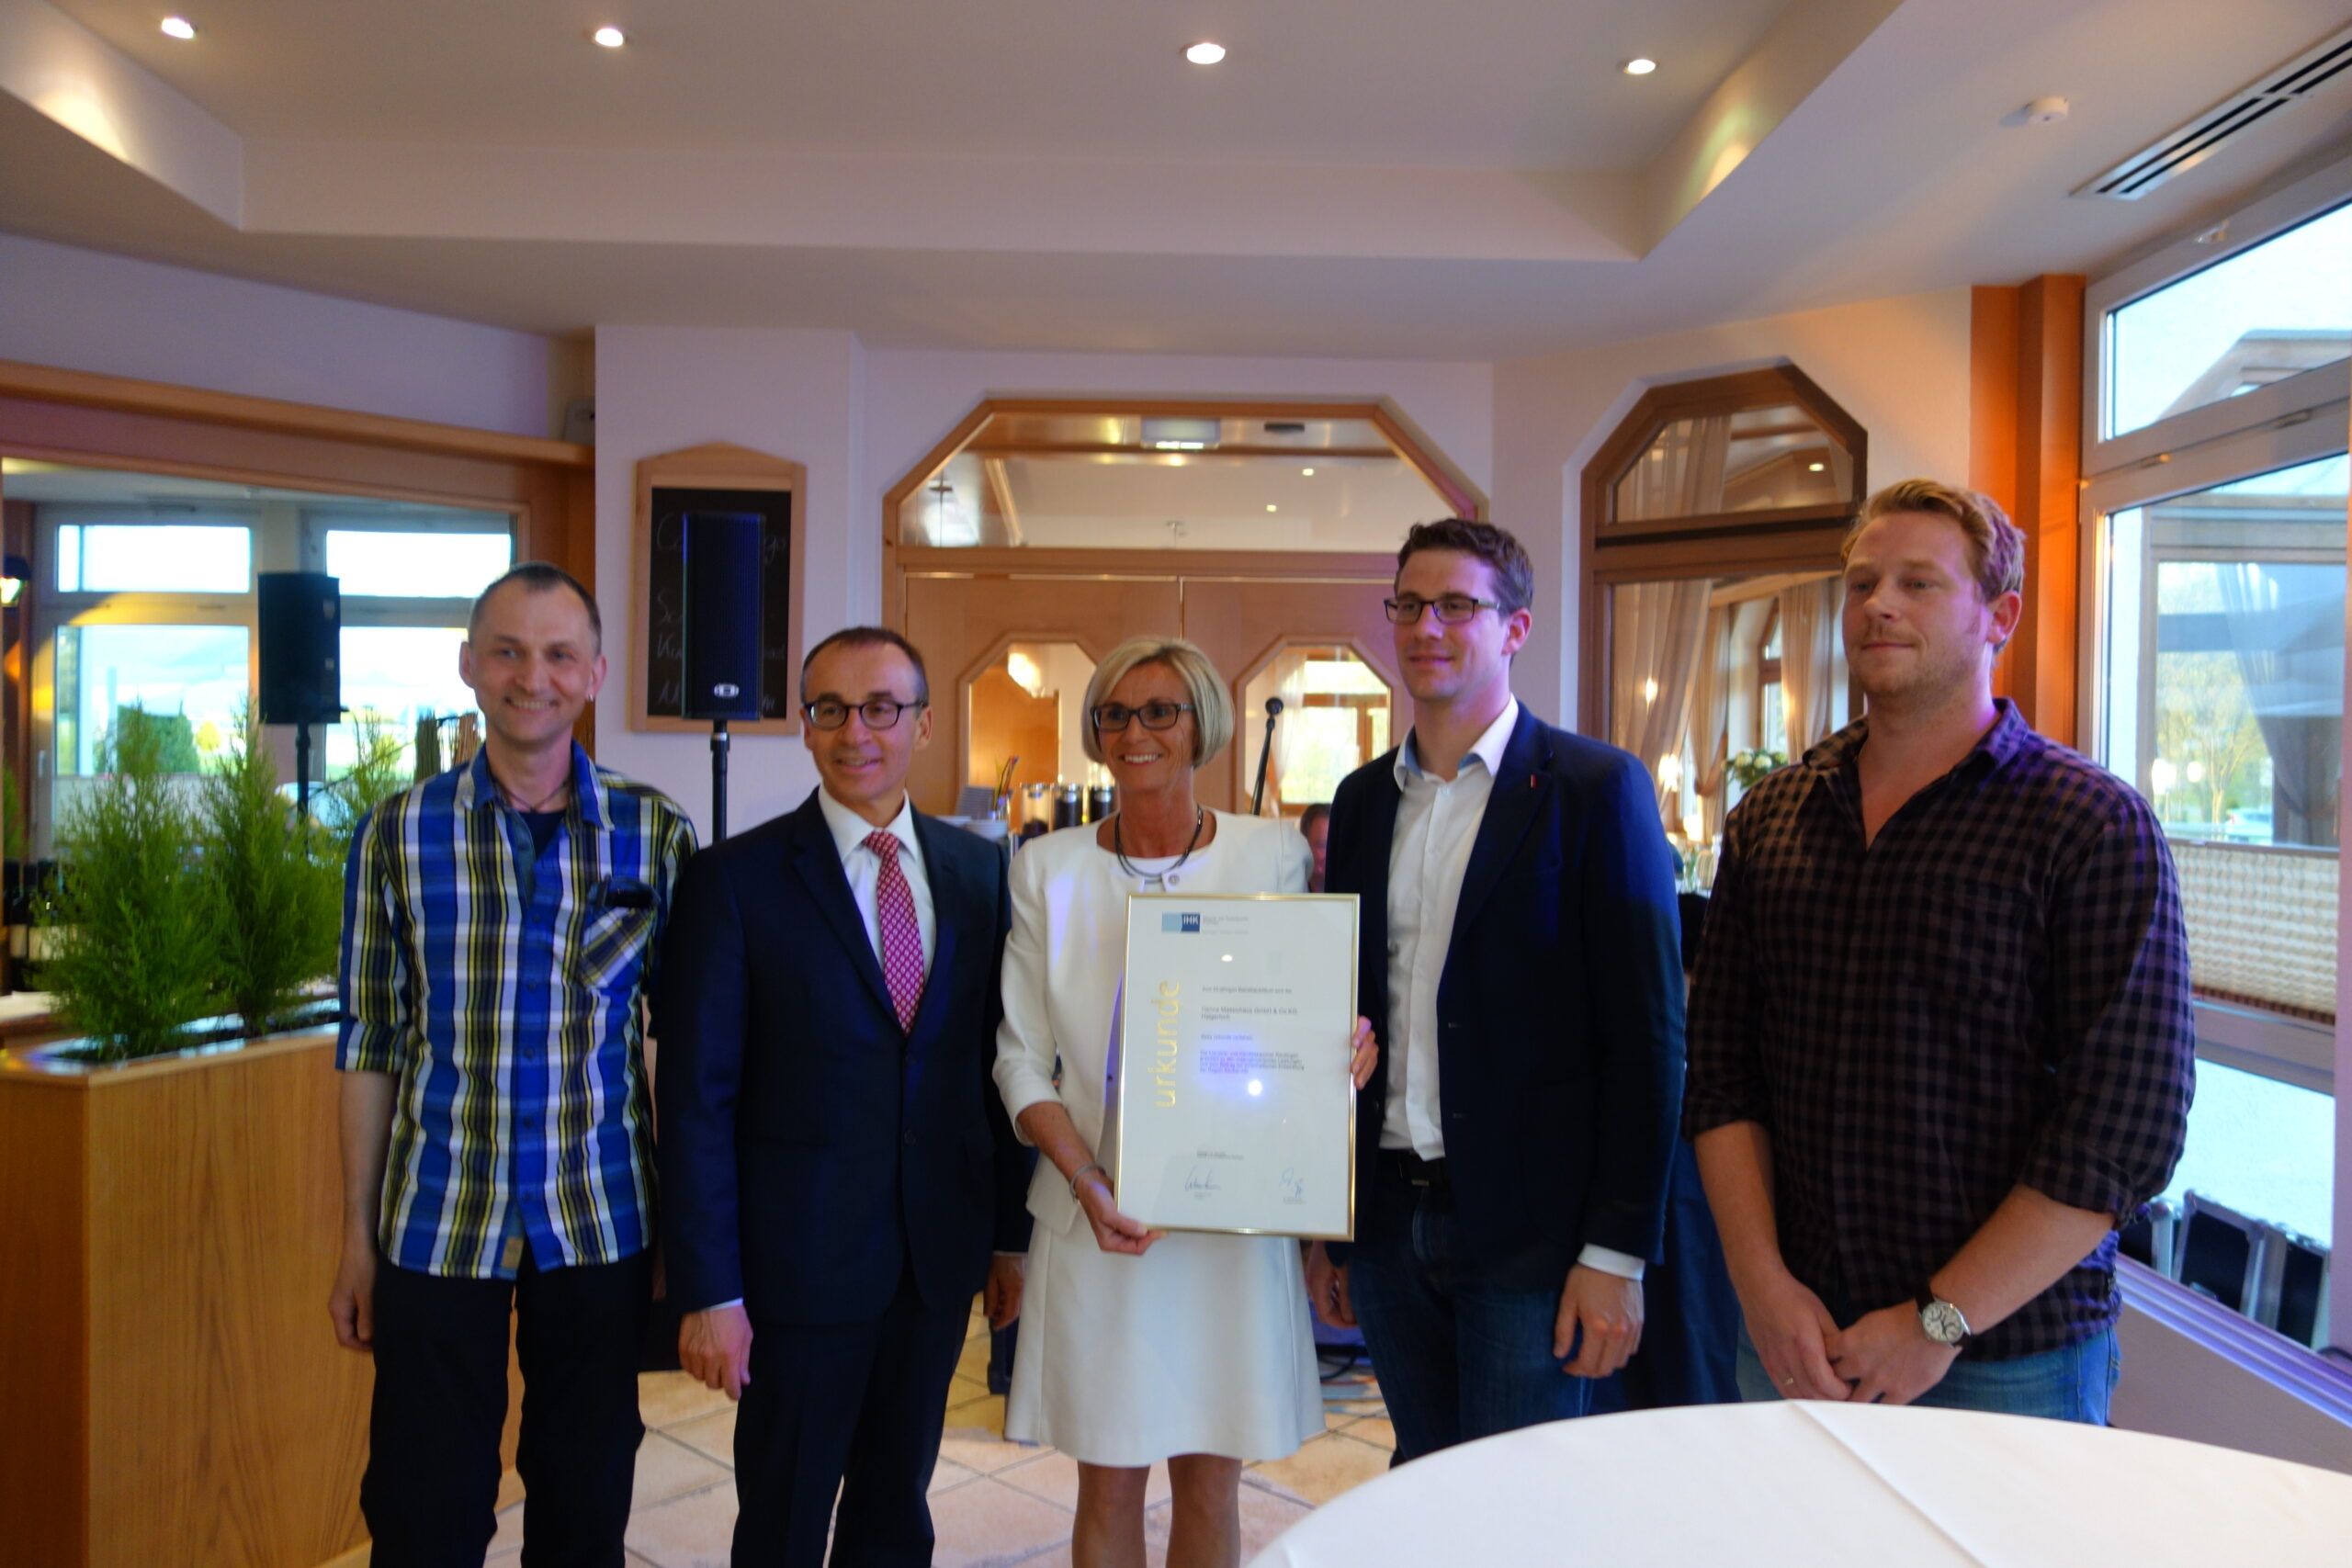 Regine Henne mit Bürgermeister und weiteren Personen bei der IHK-Urkunden Übergabe